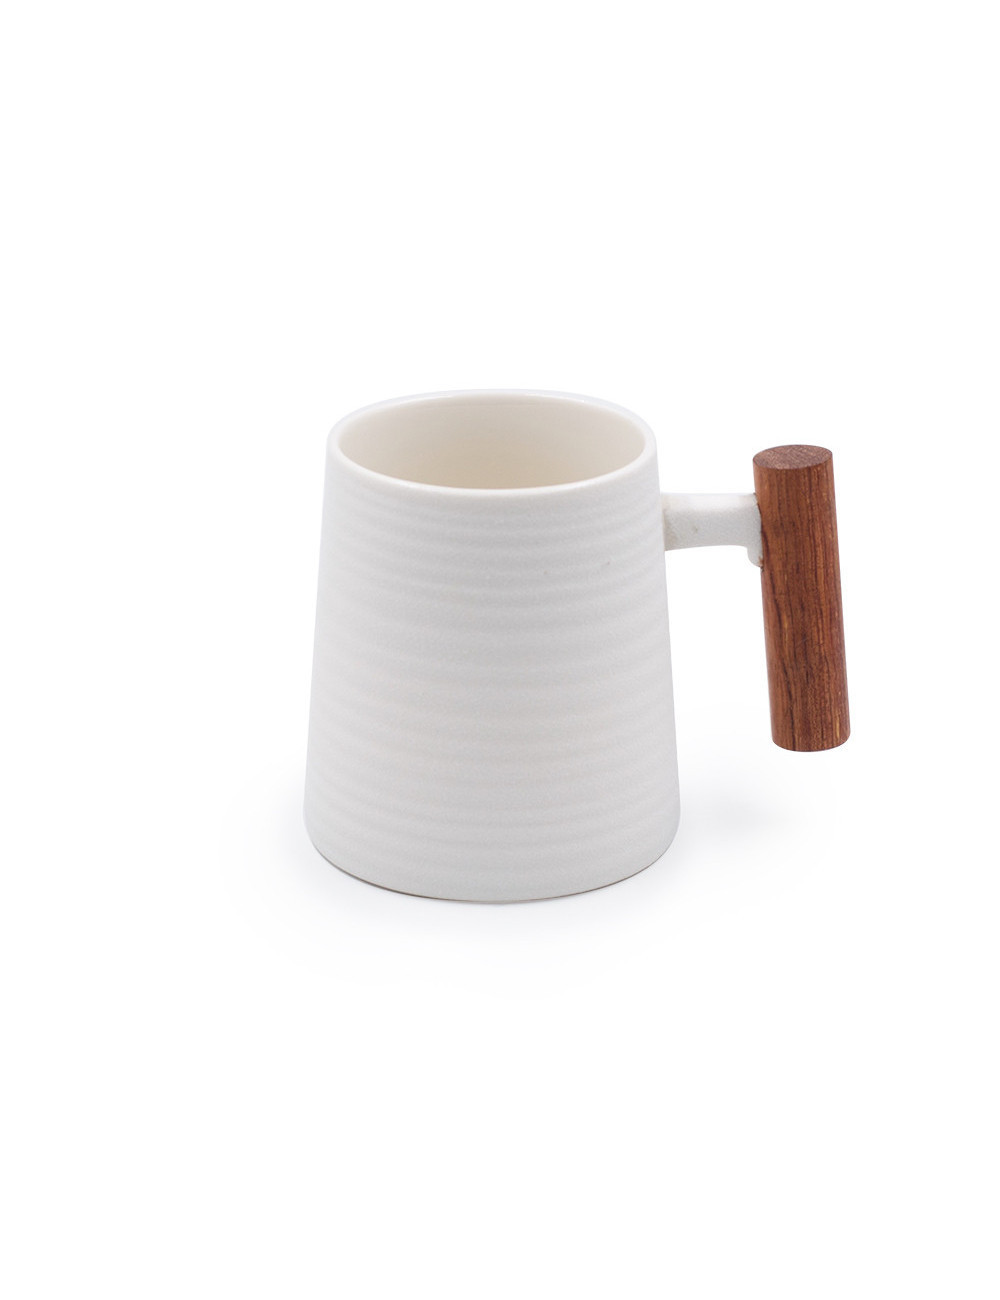 Mug stile anni '70 Old Style in porcellana bianca effetto ghisa - La Pianta del Tè shop on line